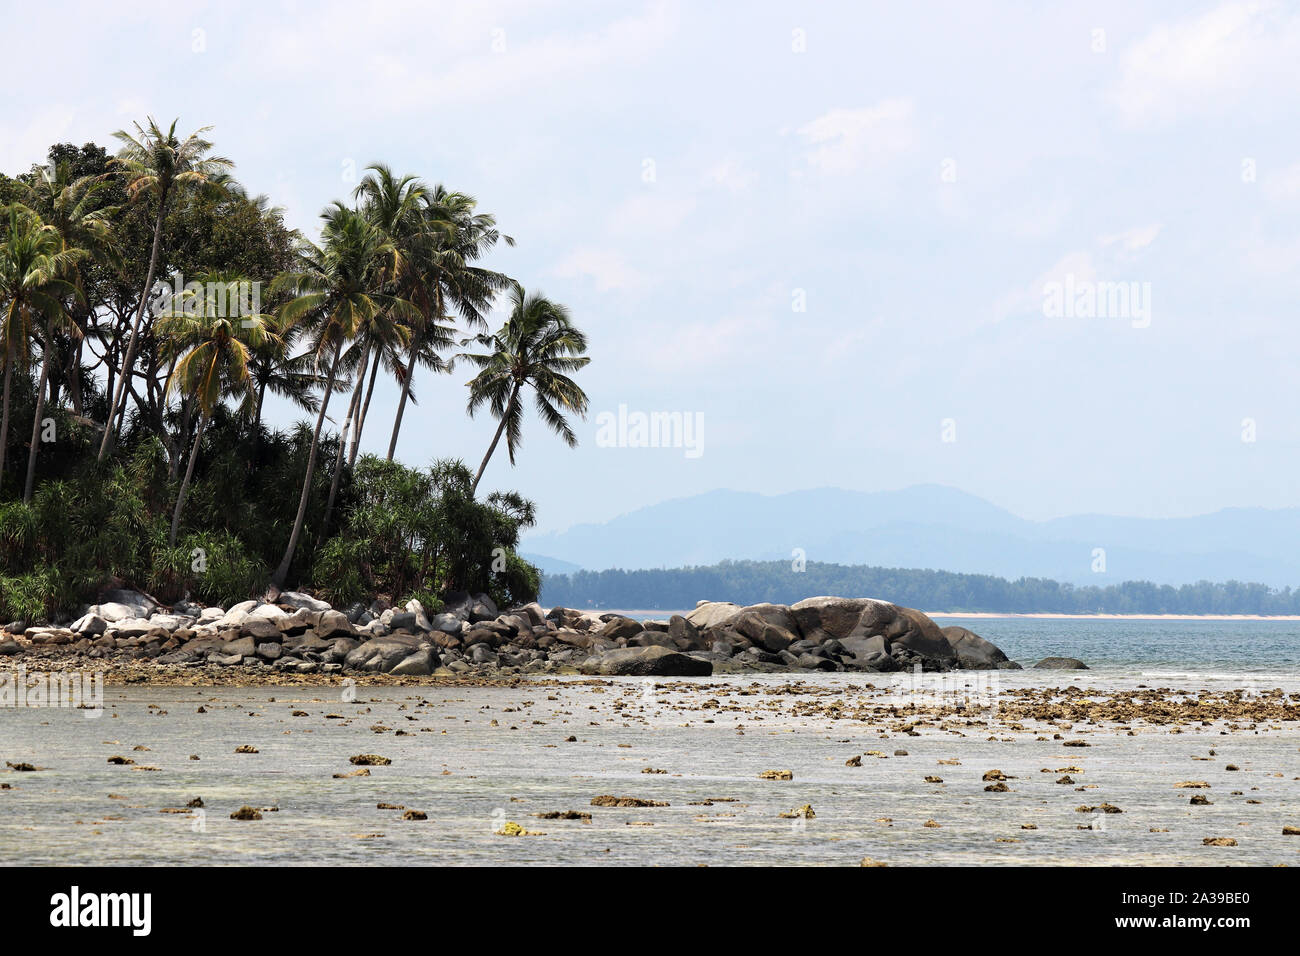 Tropical beach, vue sur la mer et l'île verte avec des cocotiers. Paysage paradisiaque avec côte rocheuse et de montagnes au loin Banque D'Images